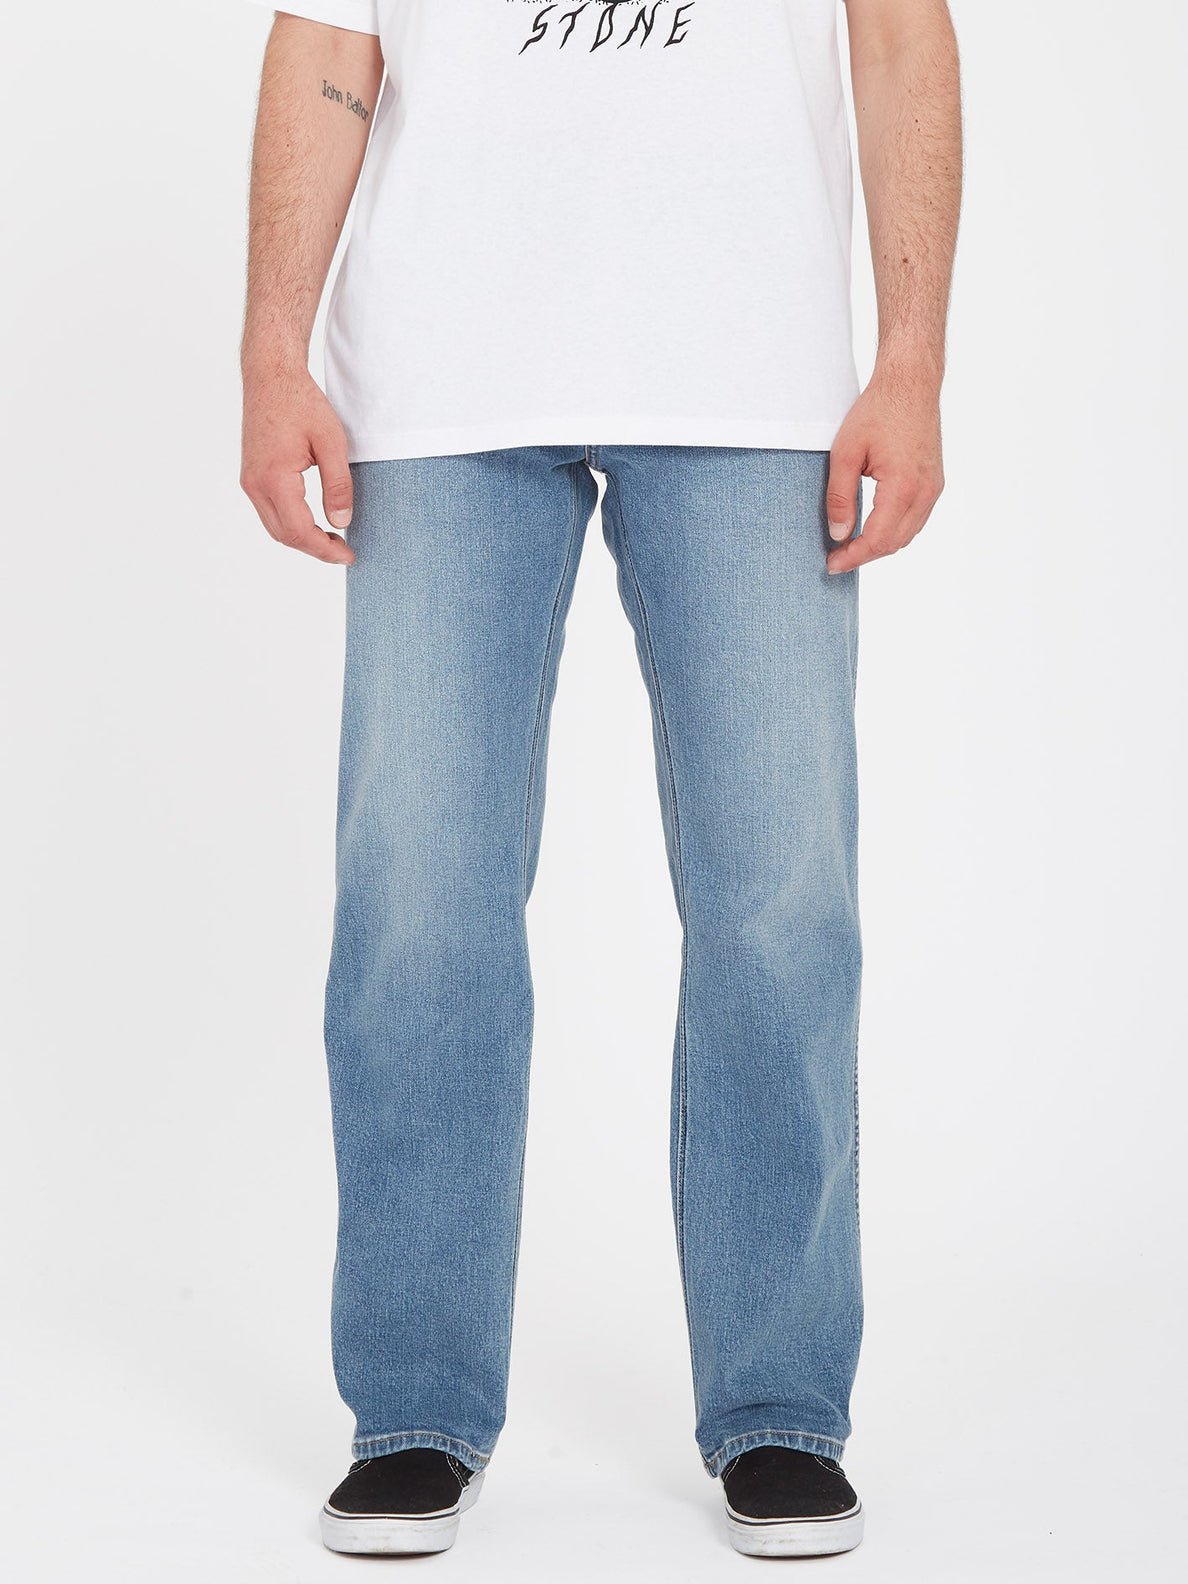 Modown Jeans - OLD TOWN INDIGO (A1931900_OTI) [F]